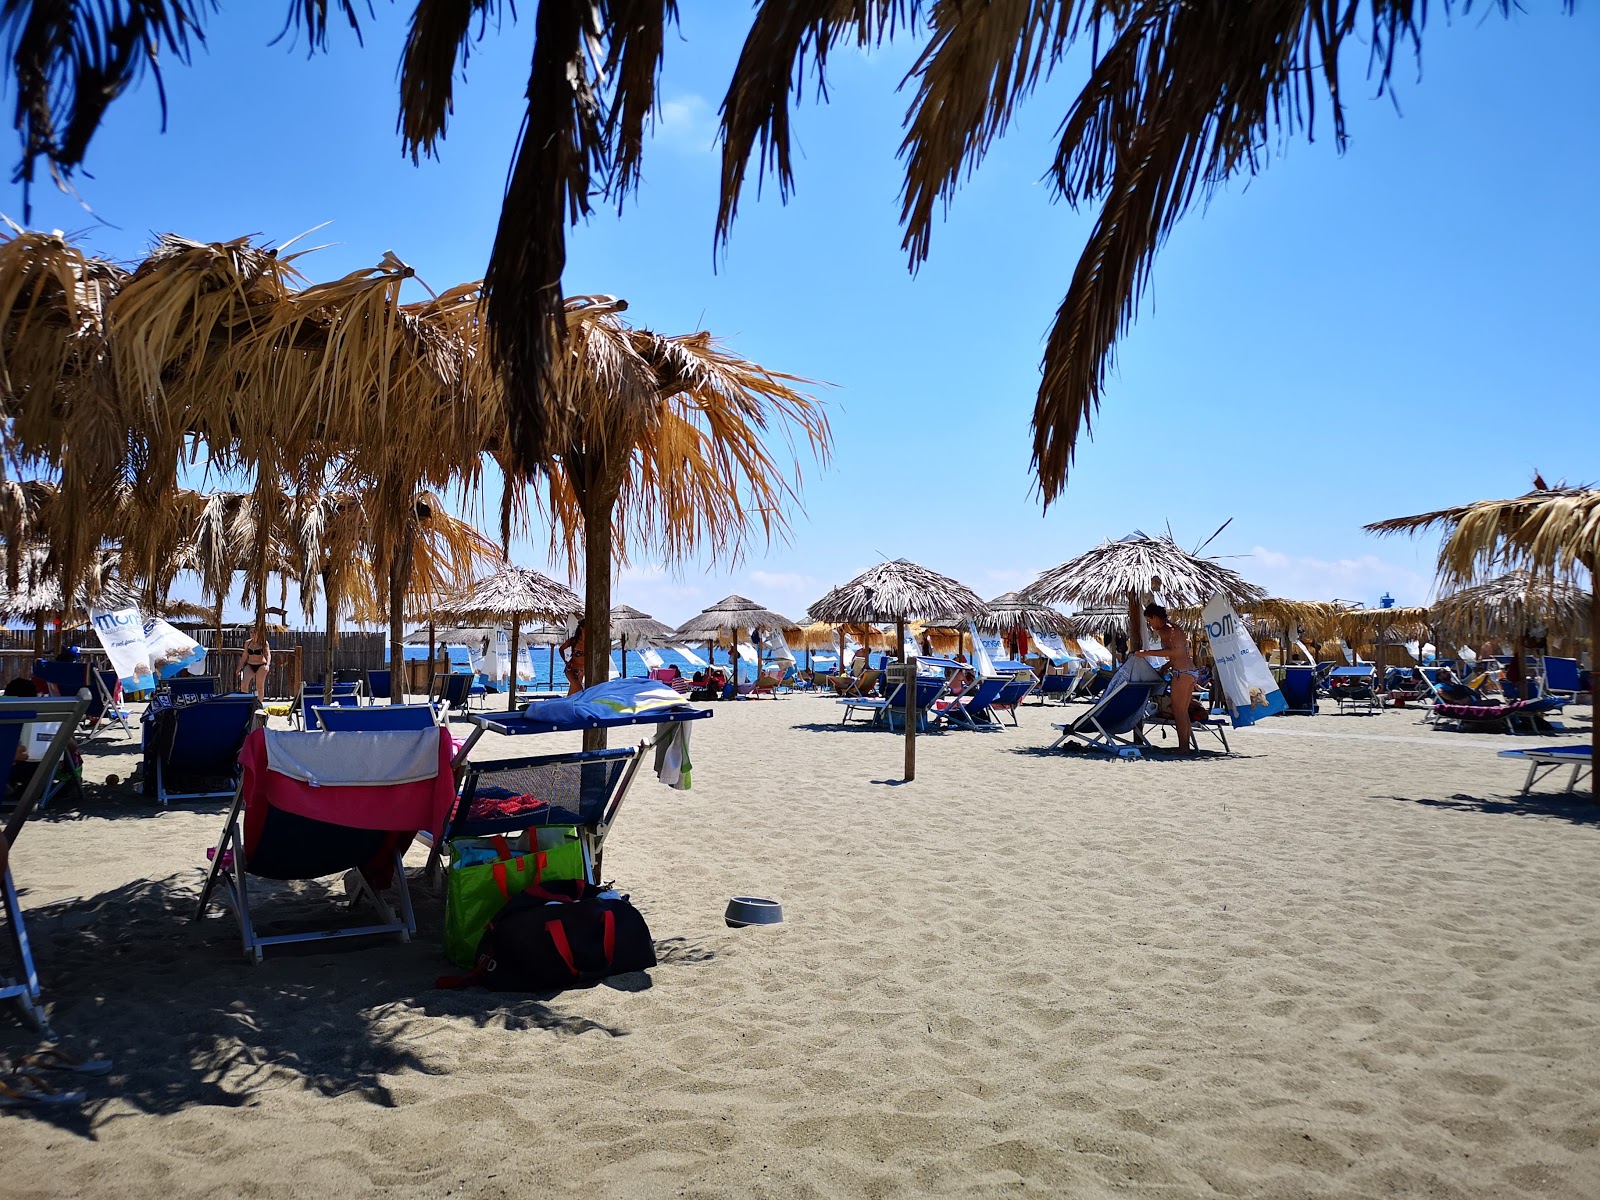 Fotografie cu Soleluna beach - locul popular printre cunoscătorii de relaxare